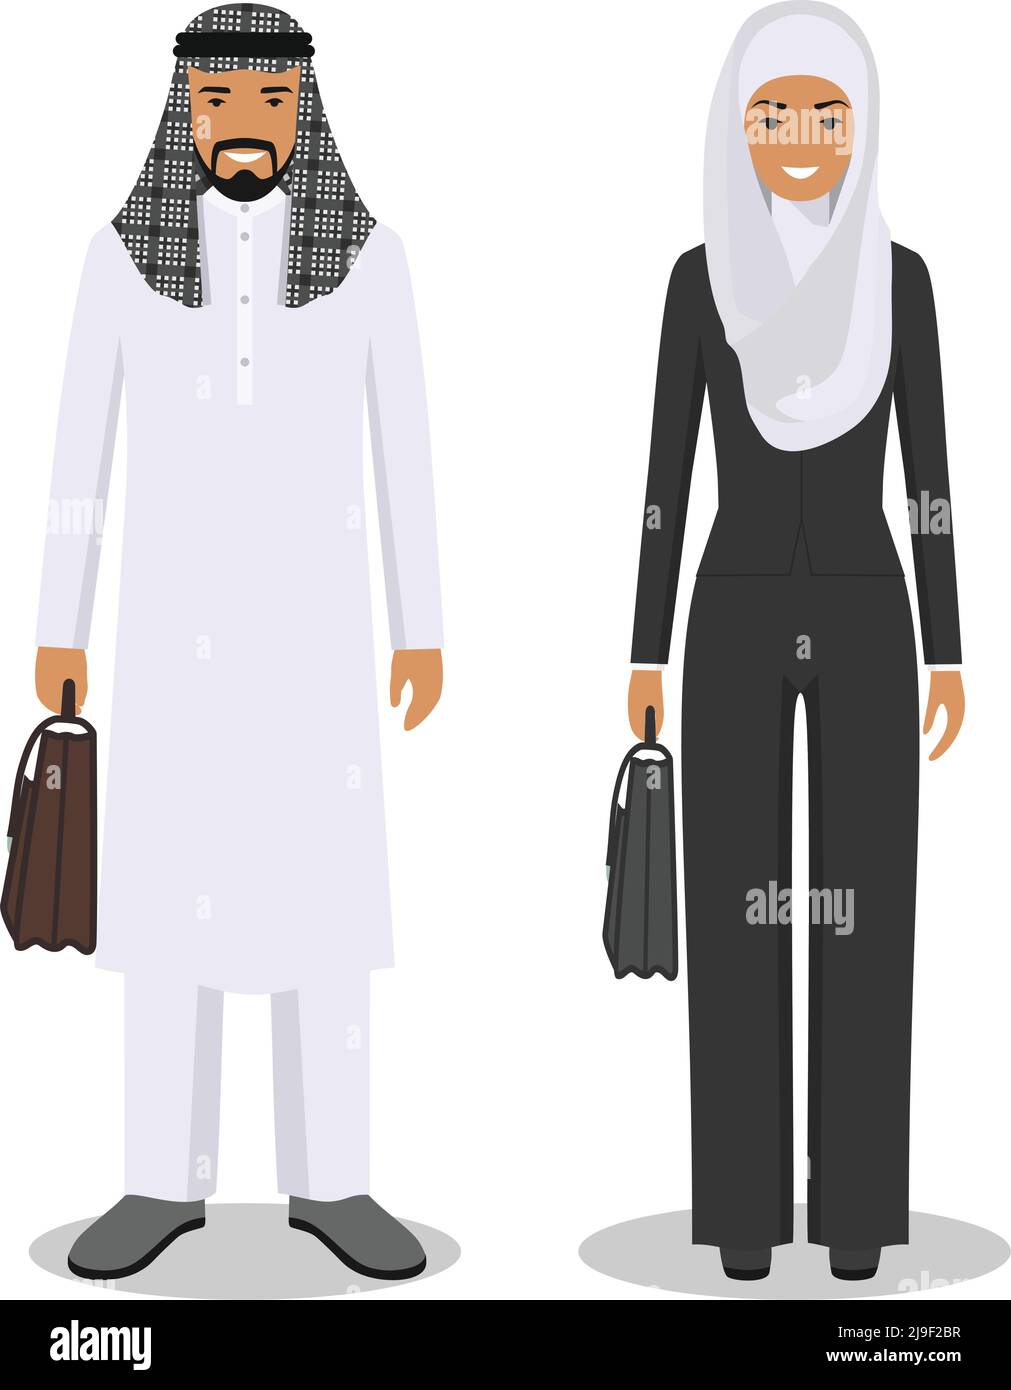 Coppia di persone arabe creative isolate su sfondo bianco. Insieme di uomo e donna arabo di affari che si levano in piedi insieme. Carino e semplice in stile piatto. Illustrazione Vettoriale